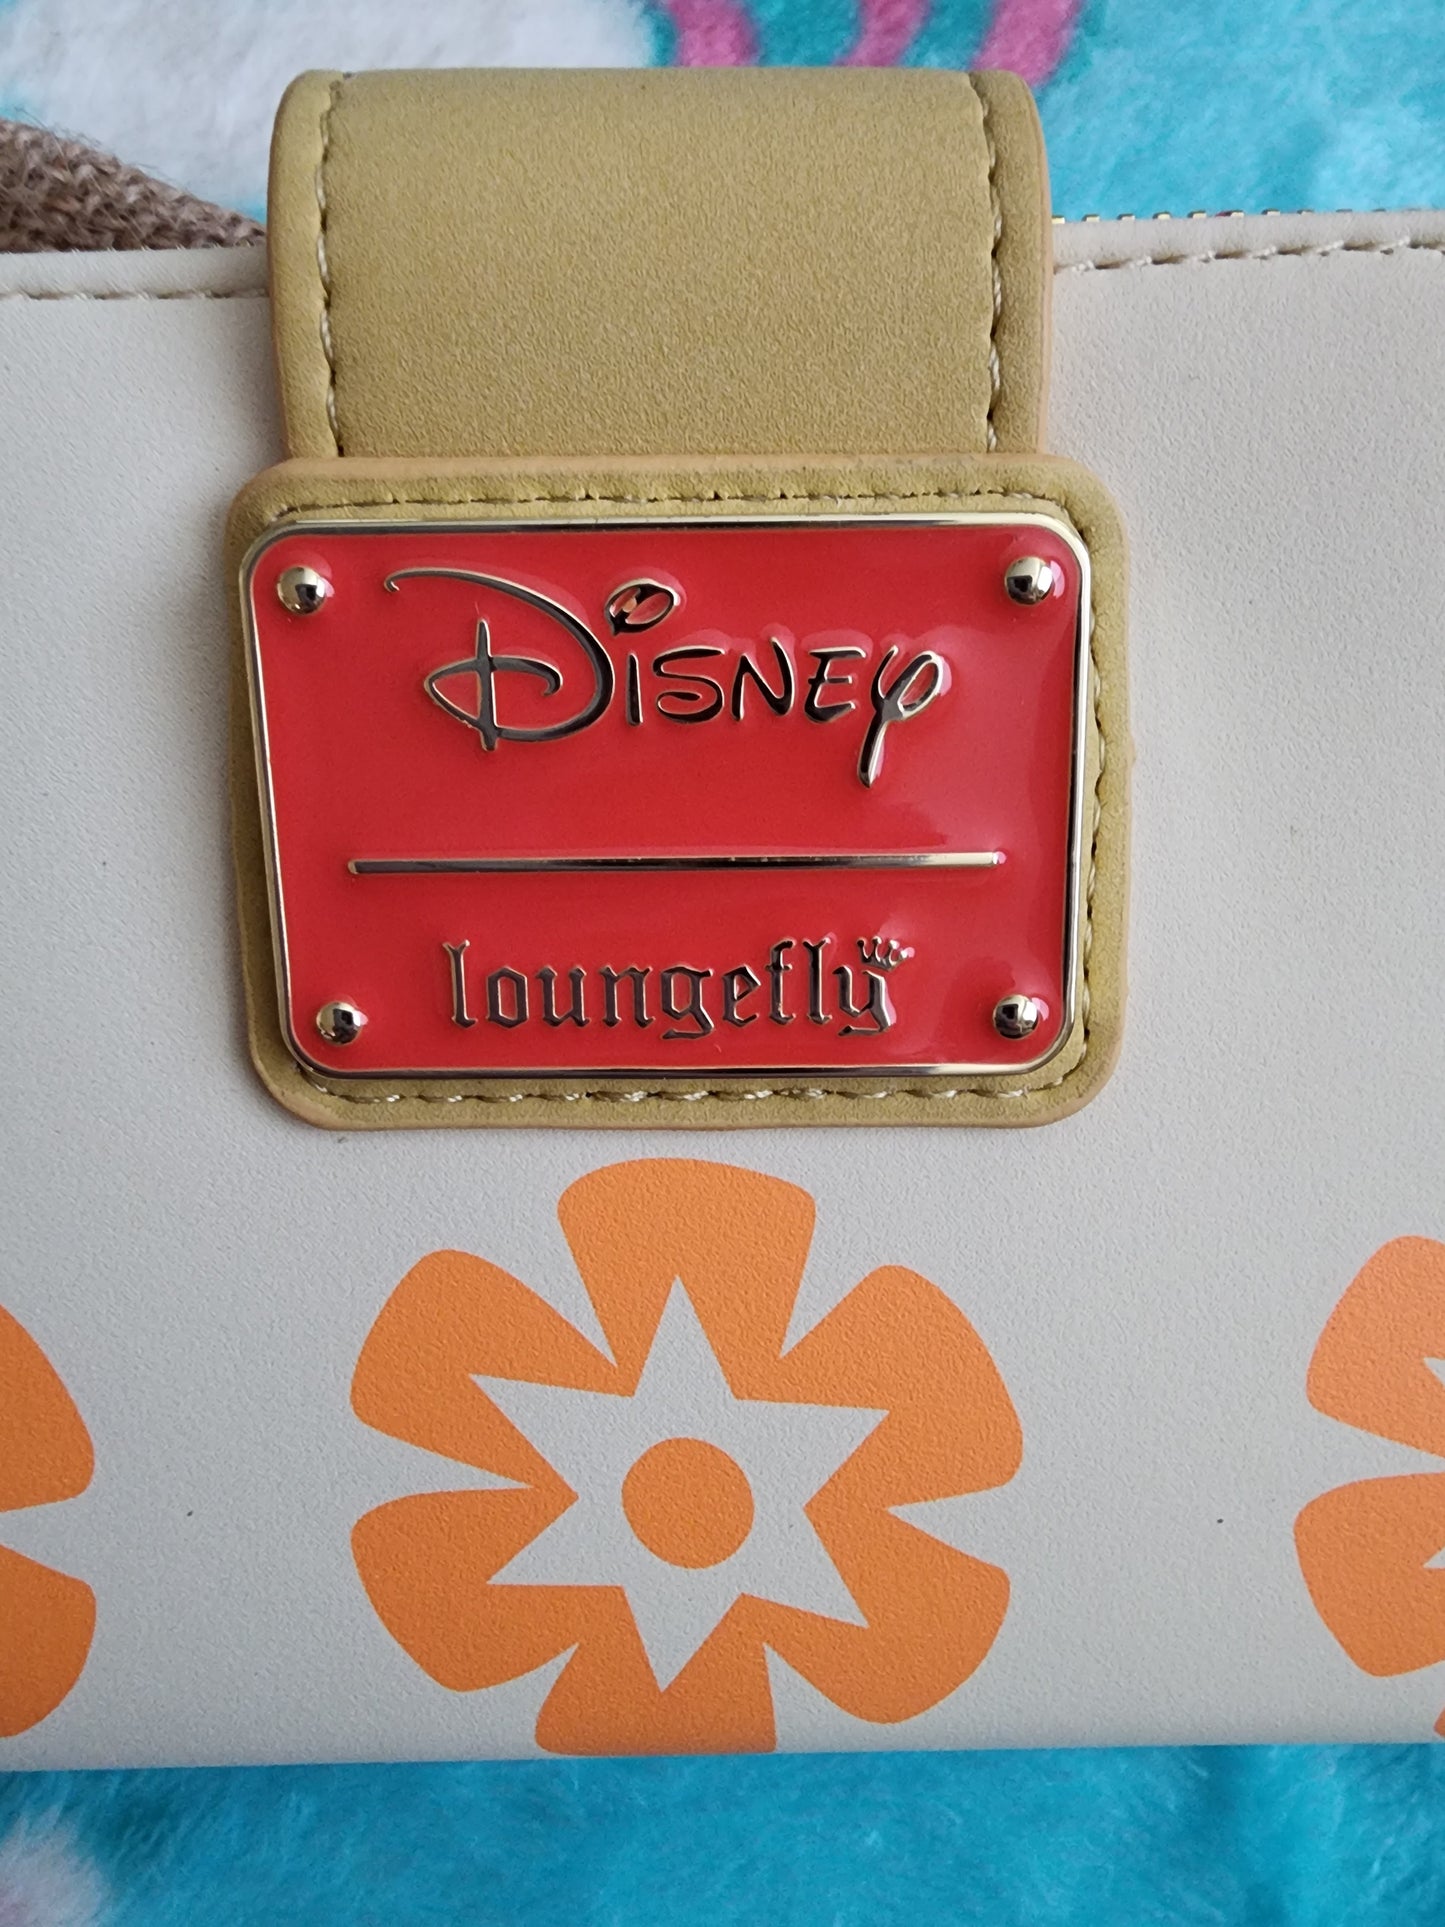 Loungefly Disney Moana Wallet